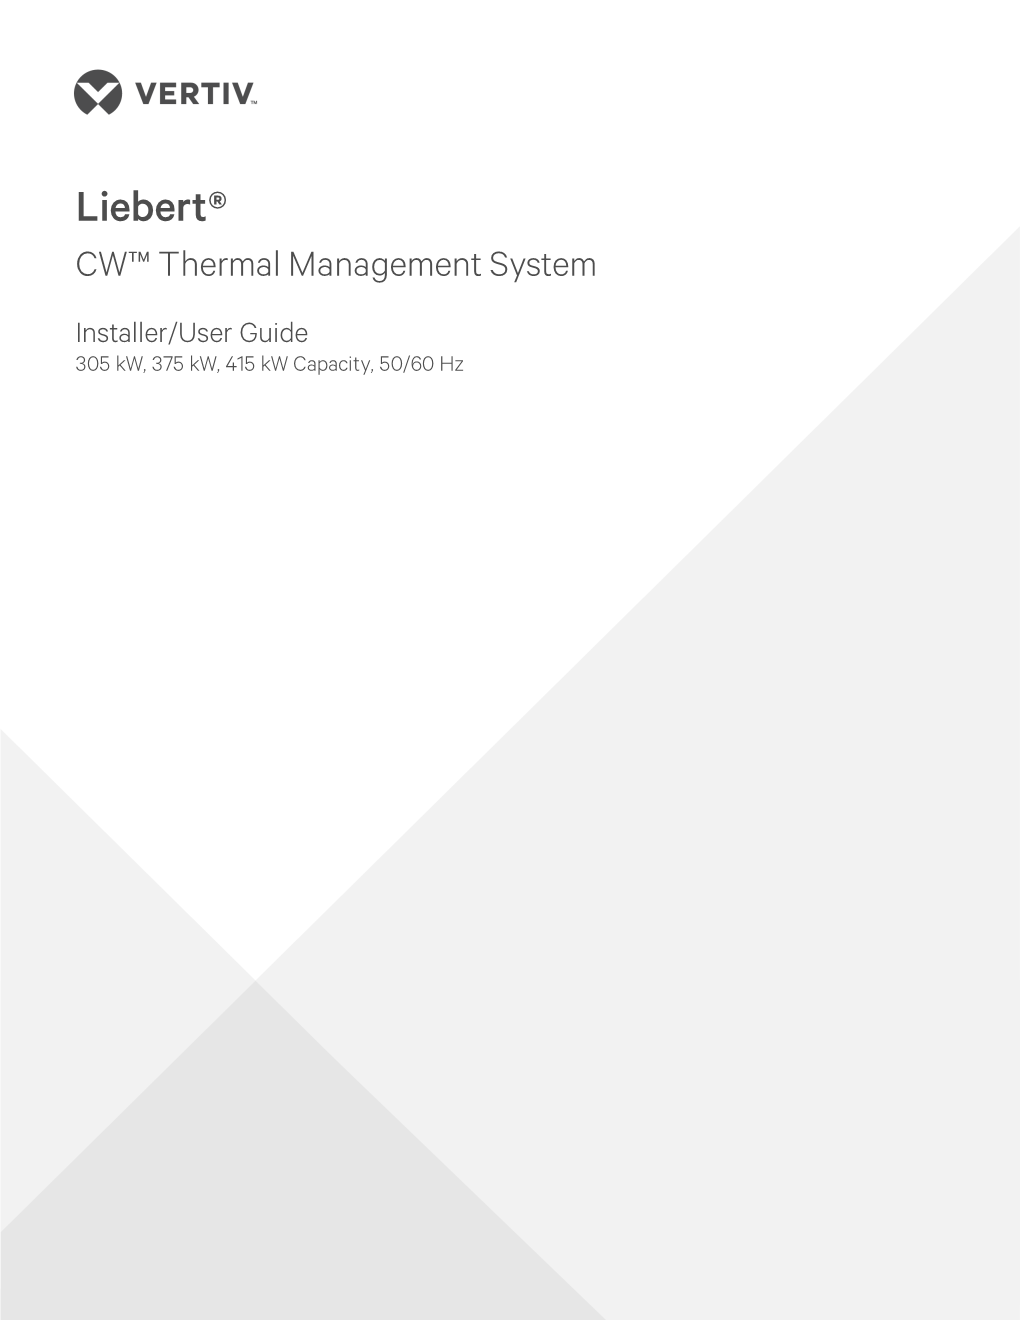 Liebert CW305, 375, 415 Kw System Manual